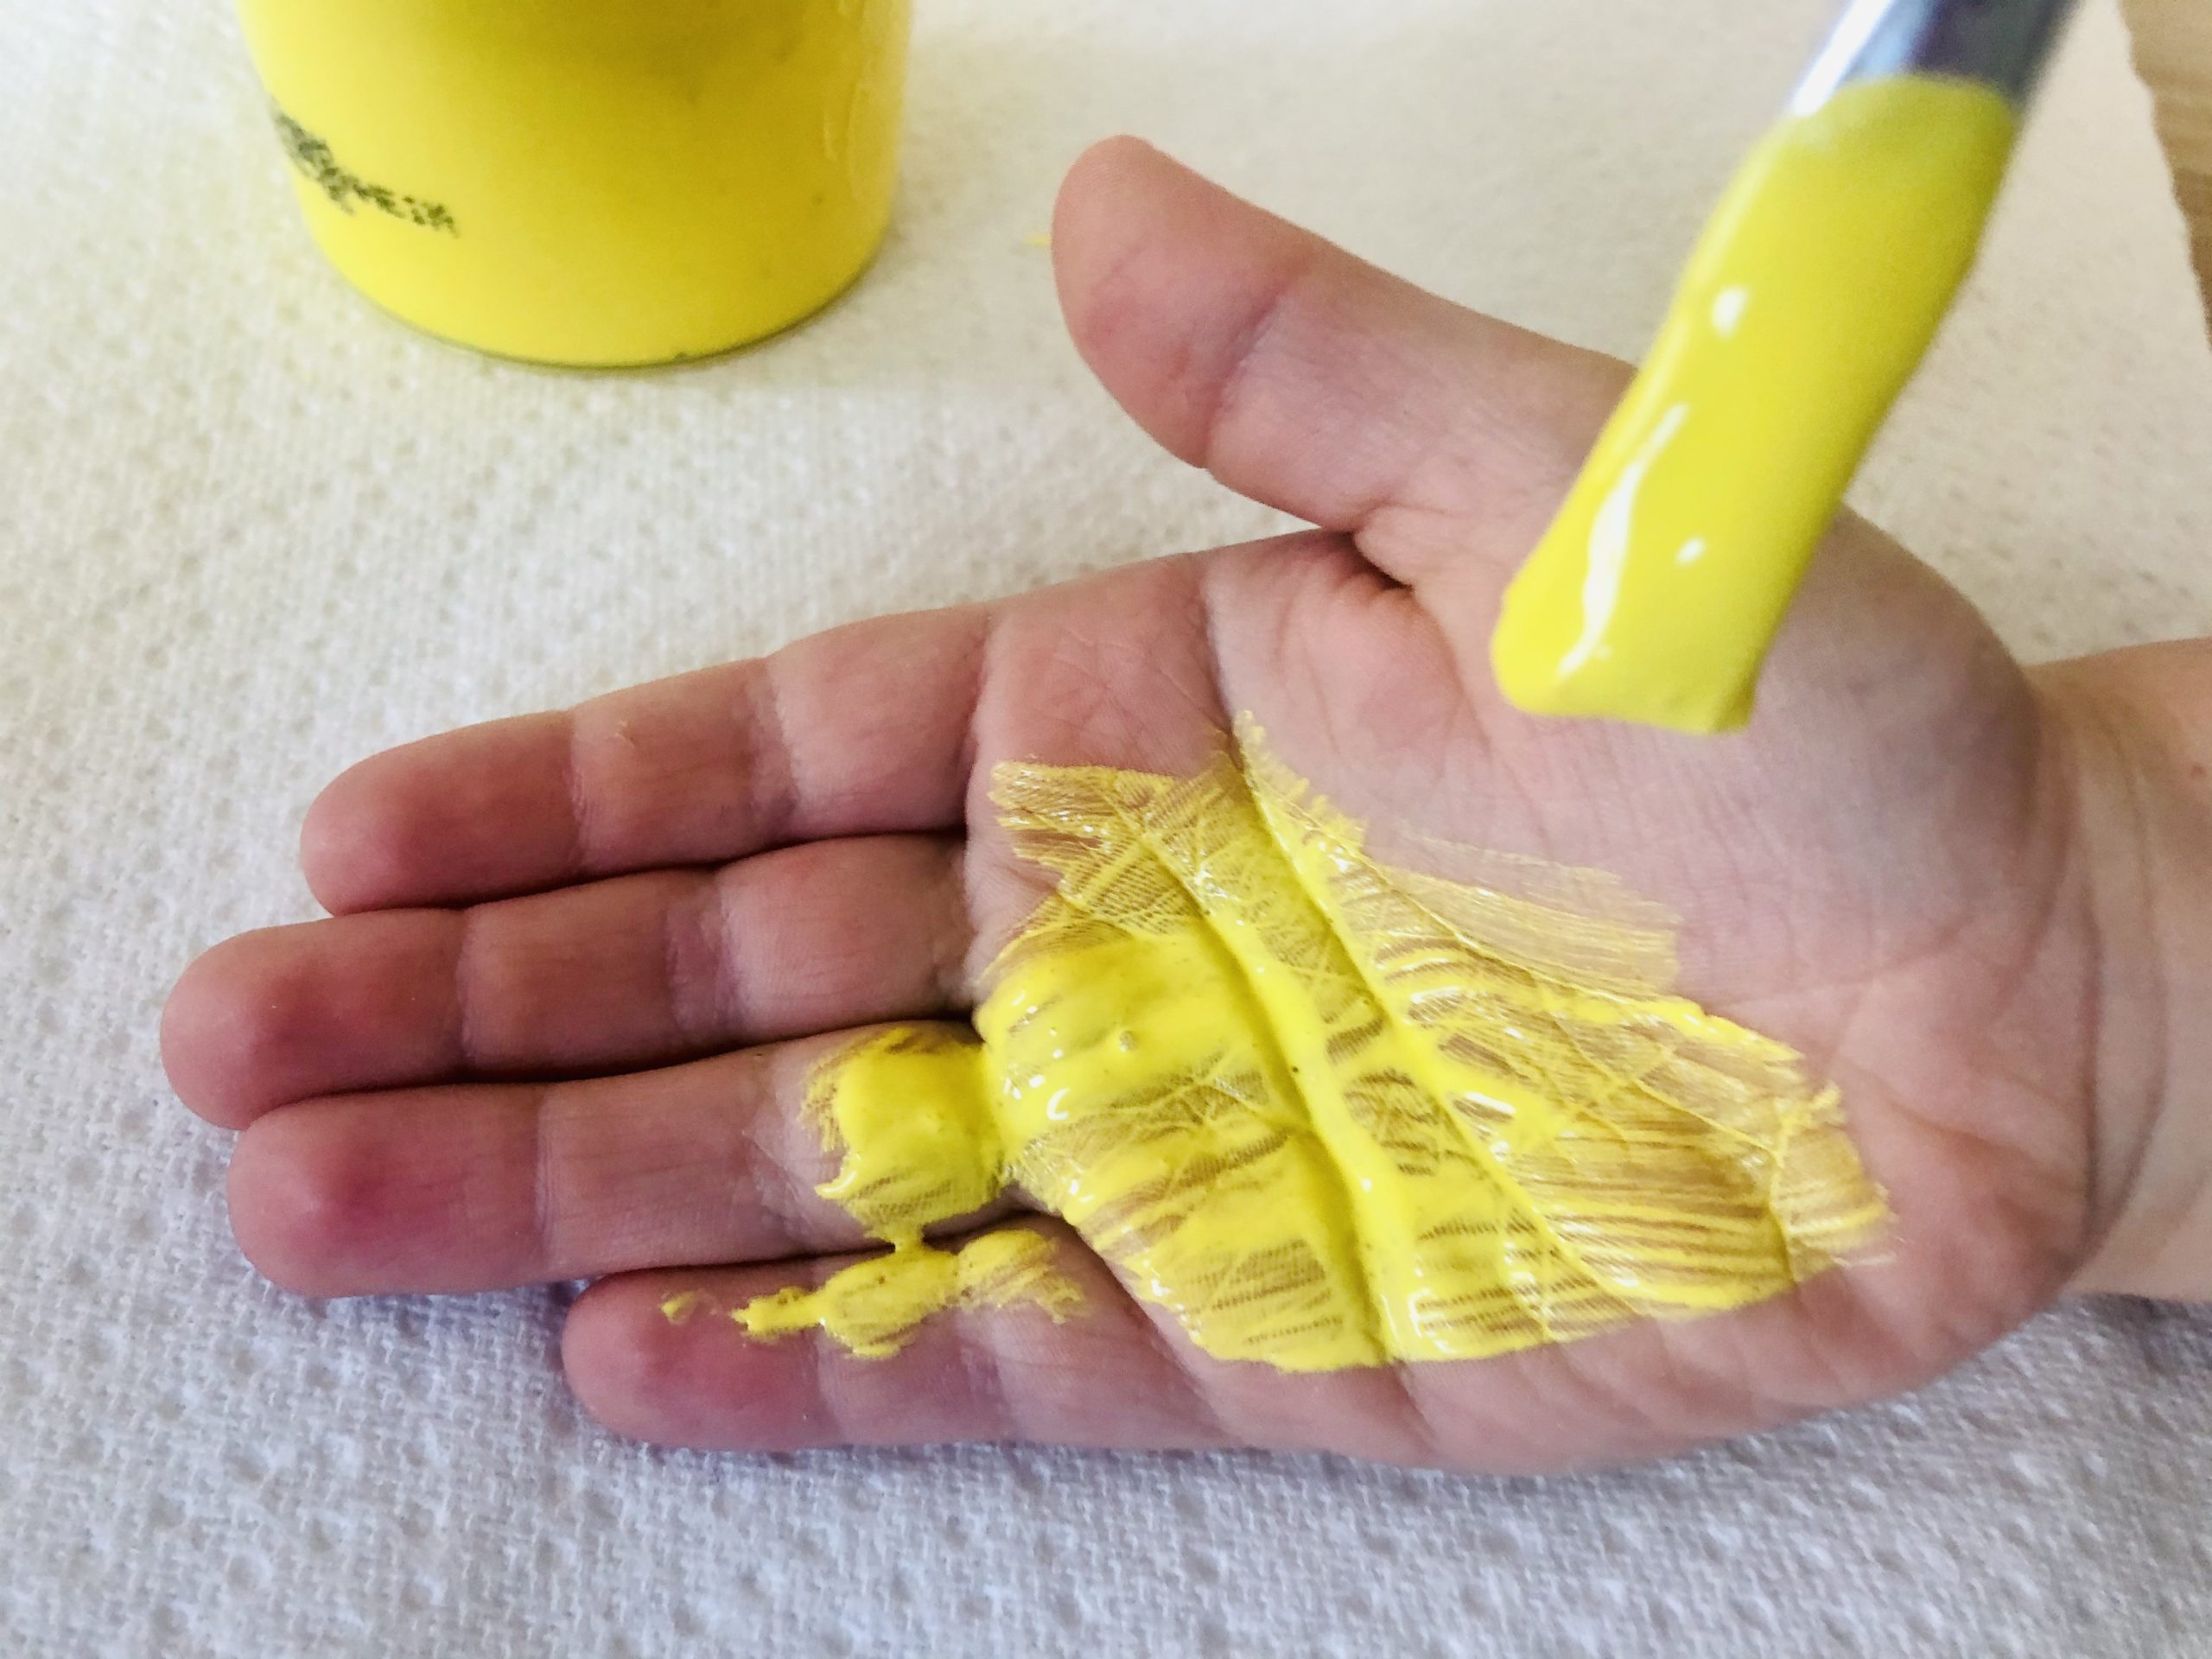 Bild zum Schritt 2 für das Bastel- und DIY-Abenteuer für Kinder: 'Dann beginnt ihr mit dem Pinsel gelbe Fingerfarbe auf eine...'